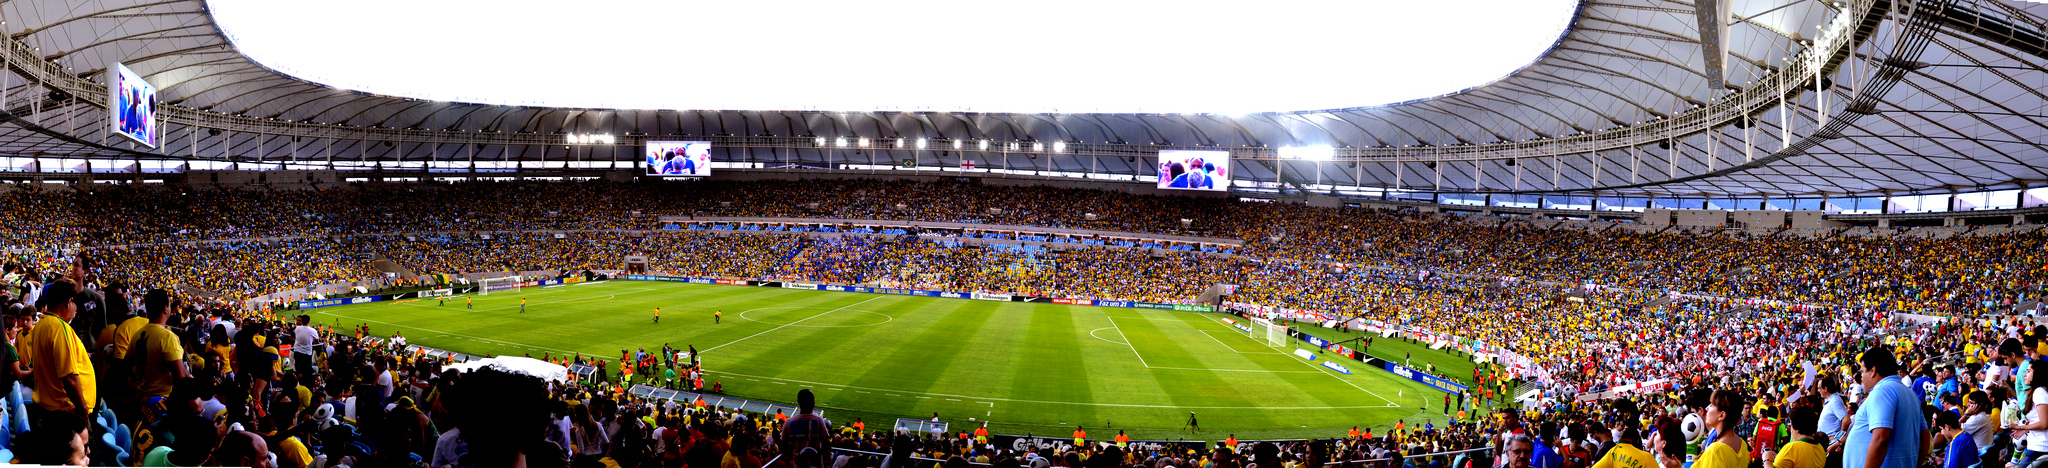 Estádio do Maracanã, Rio de Janeiro, Brasil